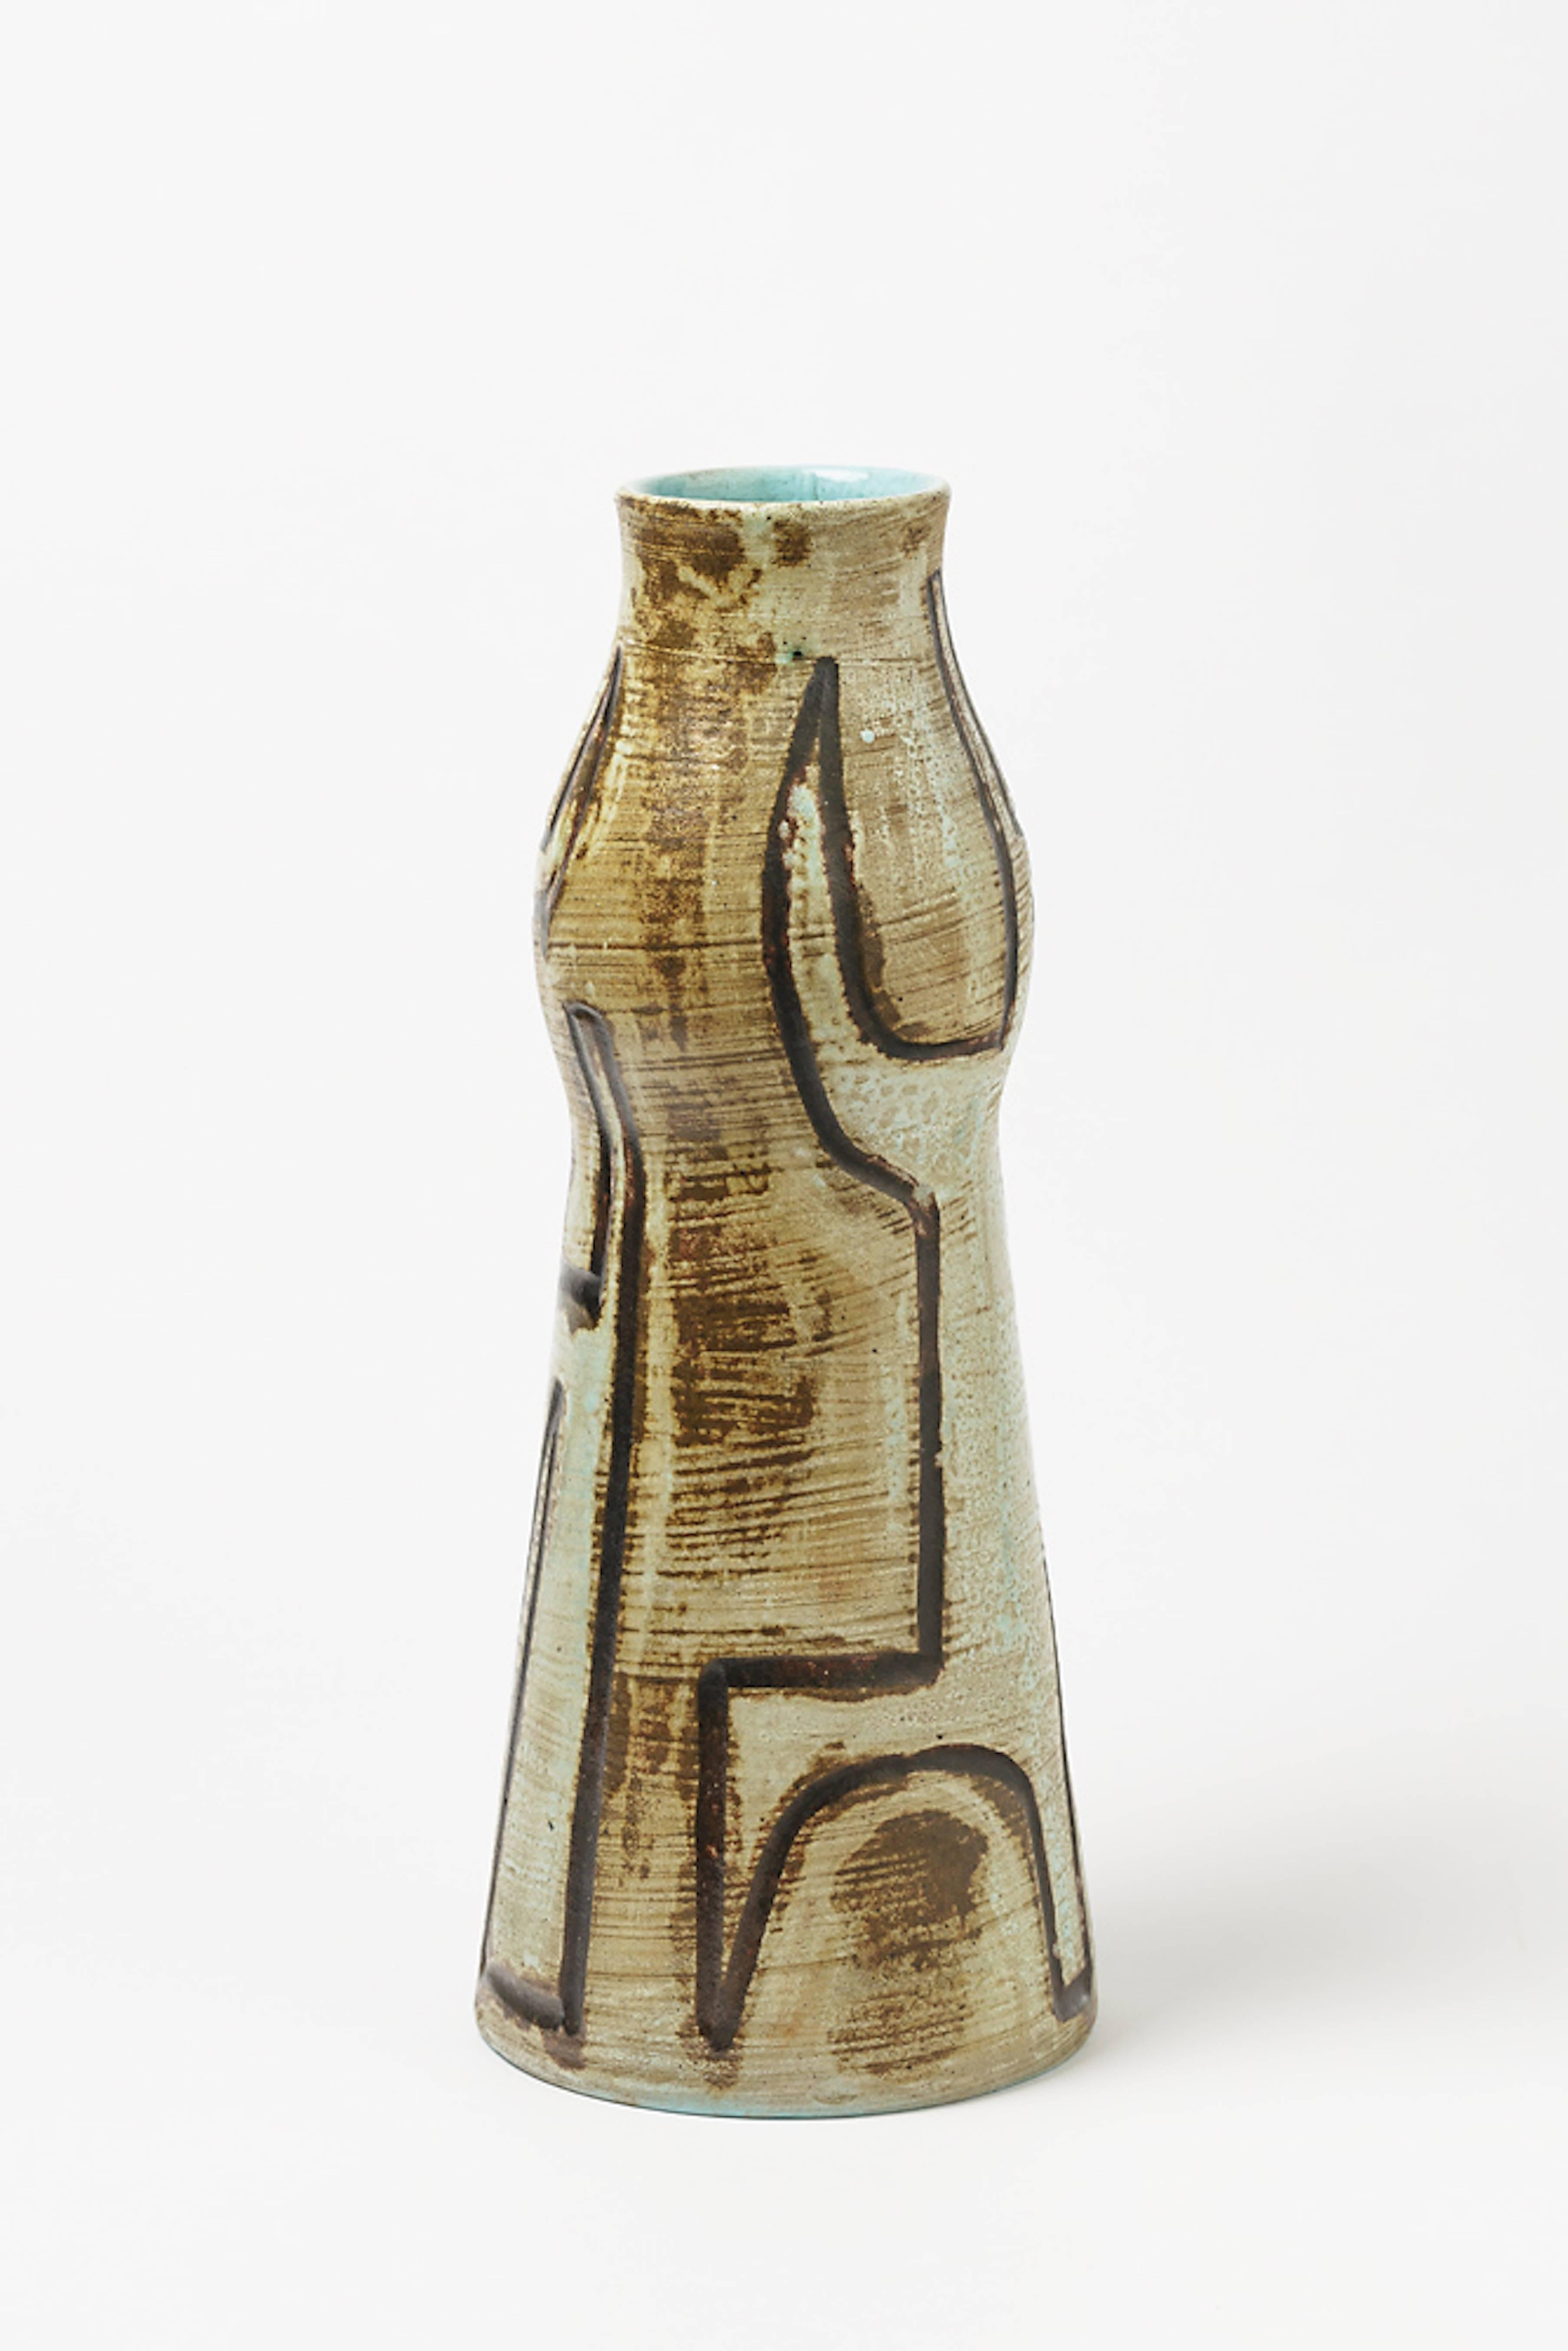 Turned Extraordinary Ceramic Vase by Accolay, circa 1960-1970, Unique Piece